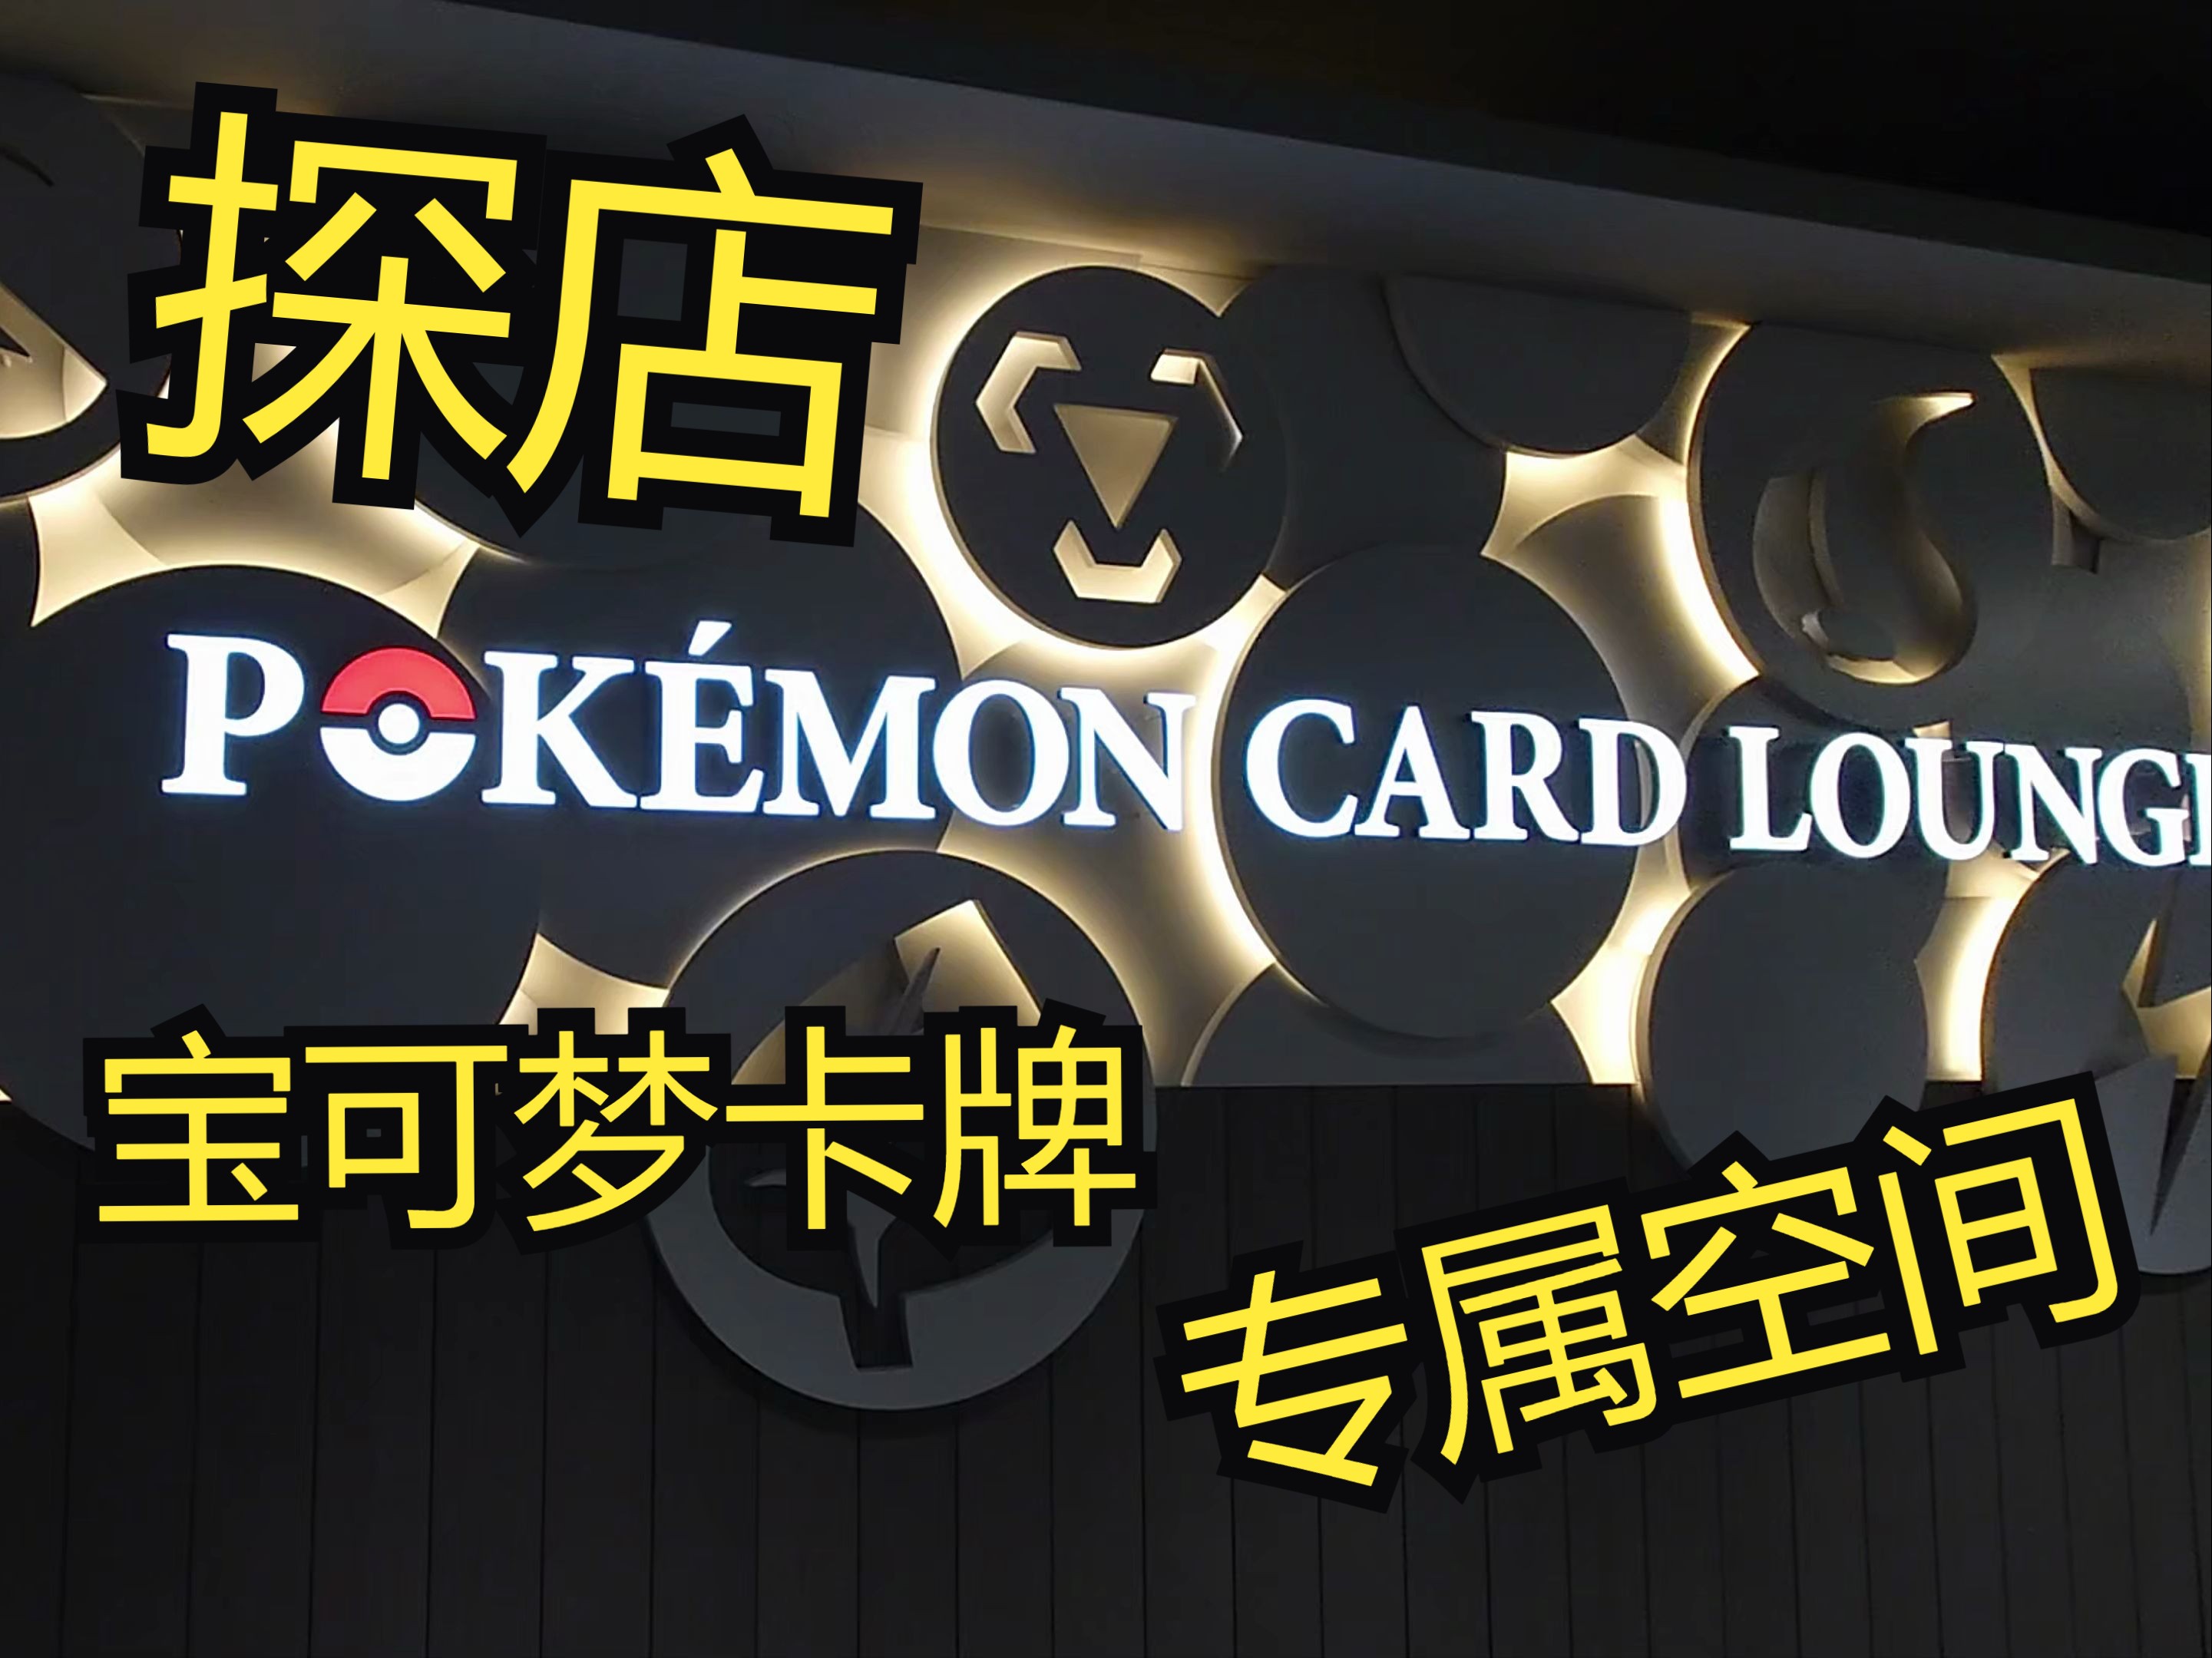 带你云逛日本最高端的卡牌店！宝可梦卡牌专属空间探店分享！